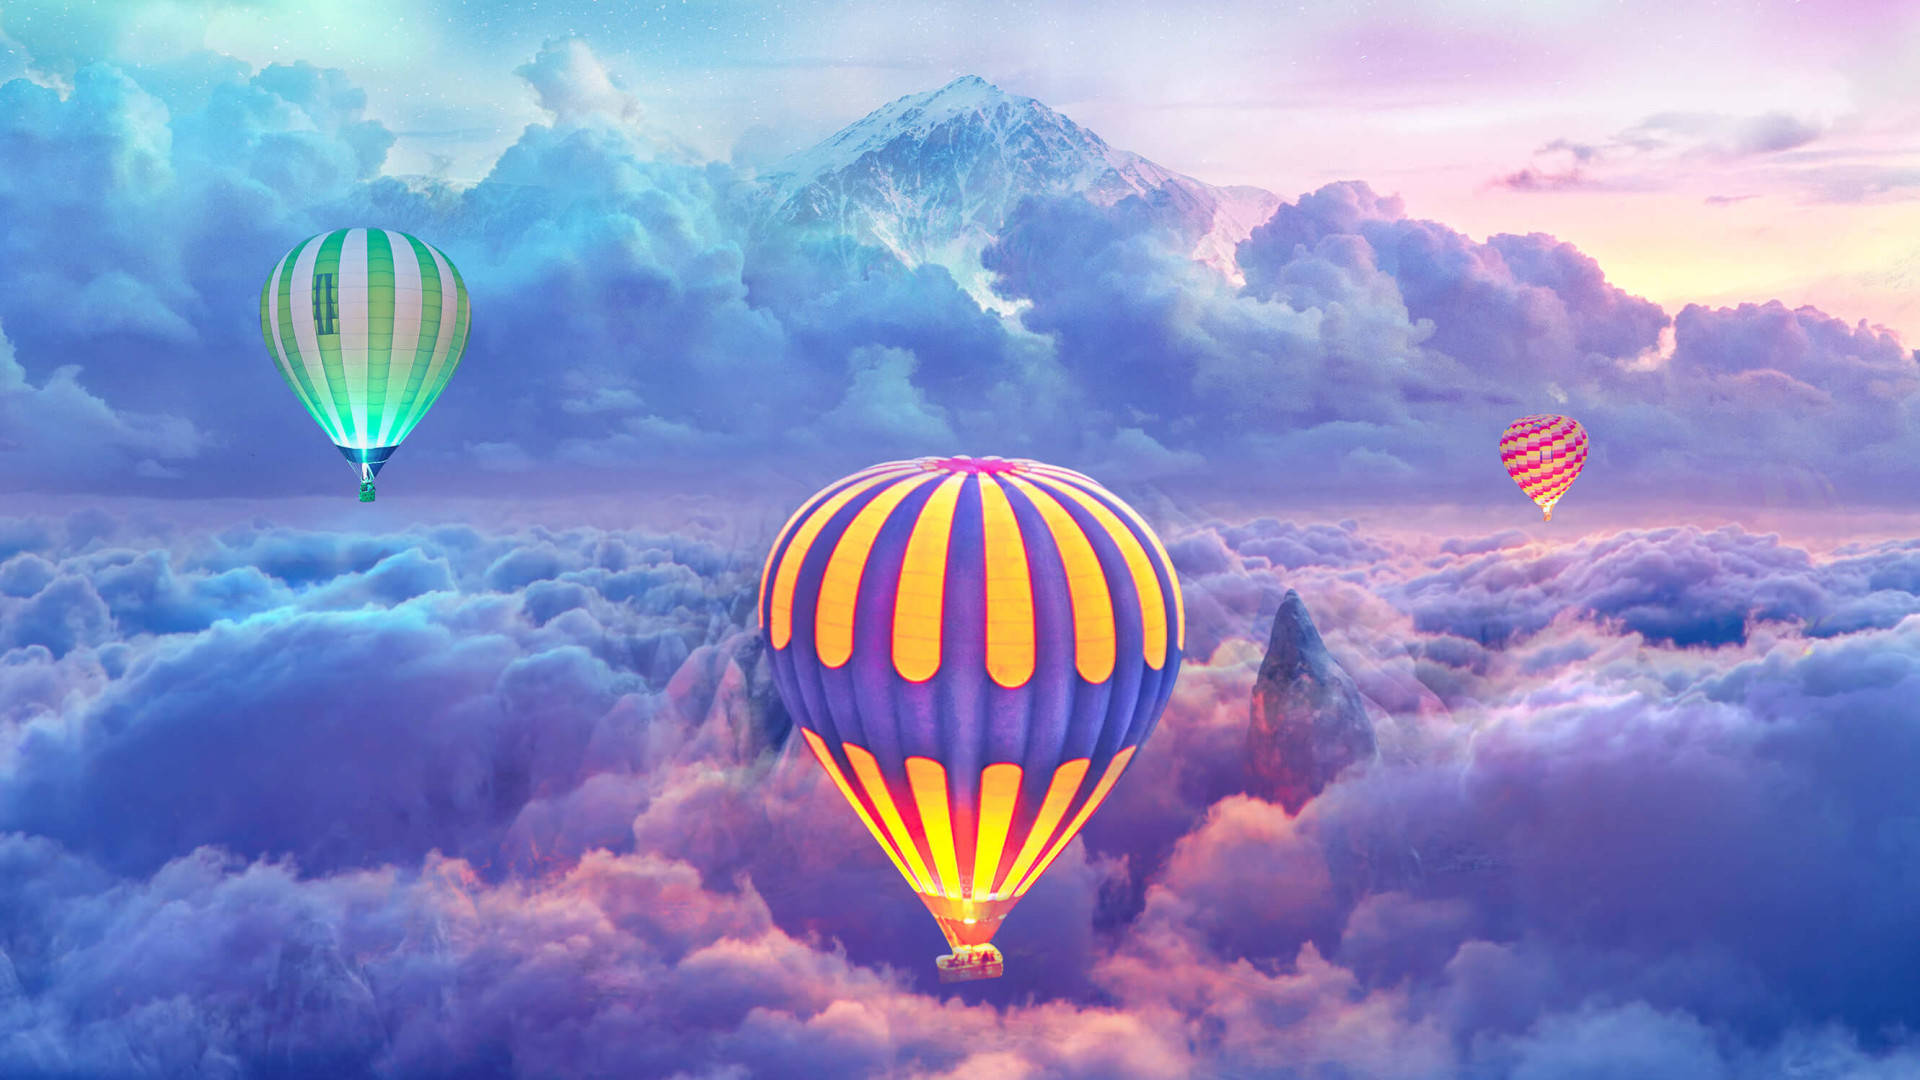 Free Hot Air Balloon Wallpaper Downloads, [100+] Hot Air Balloon Wallpapers  for FREE 